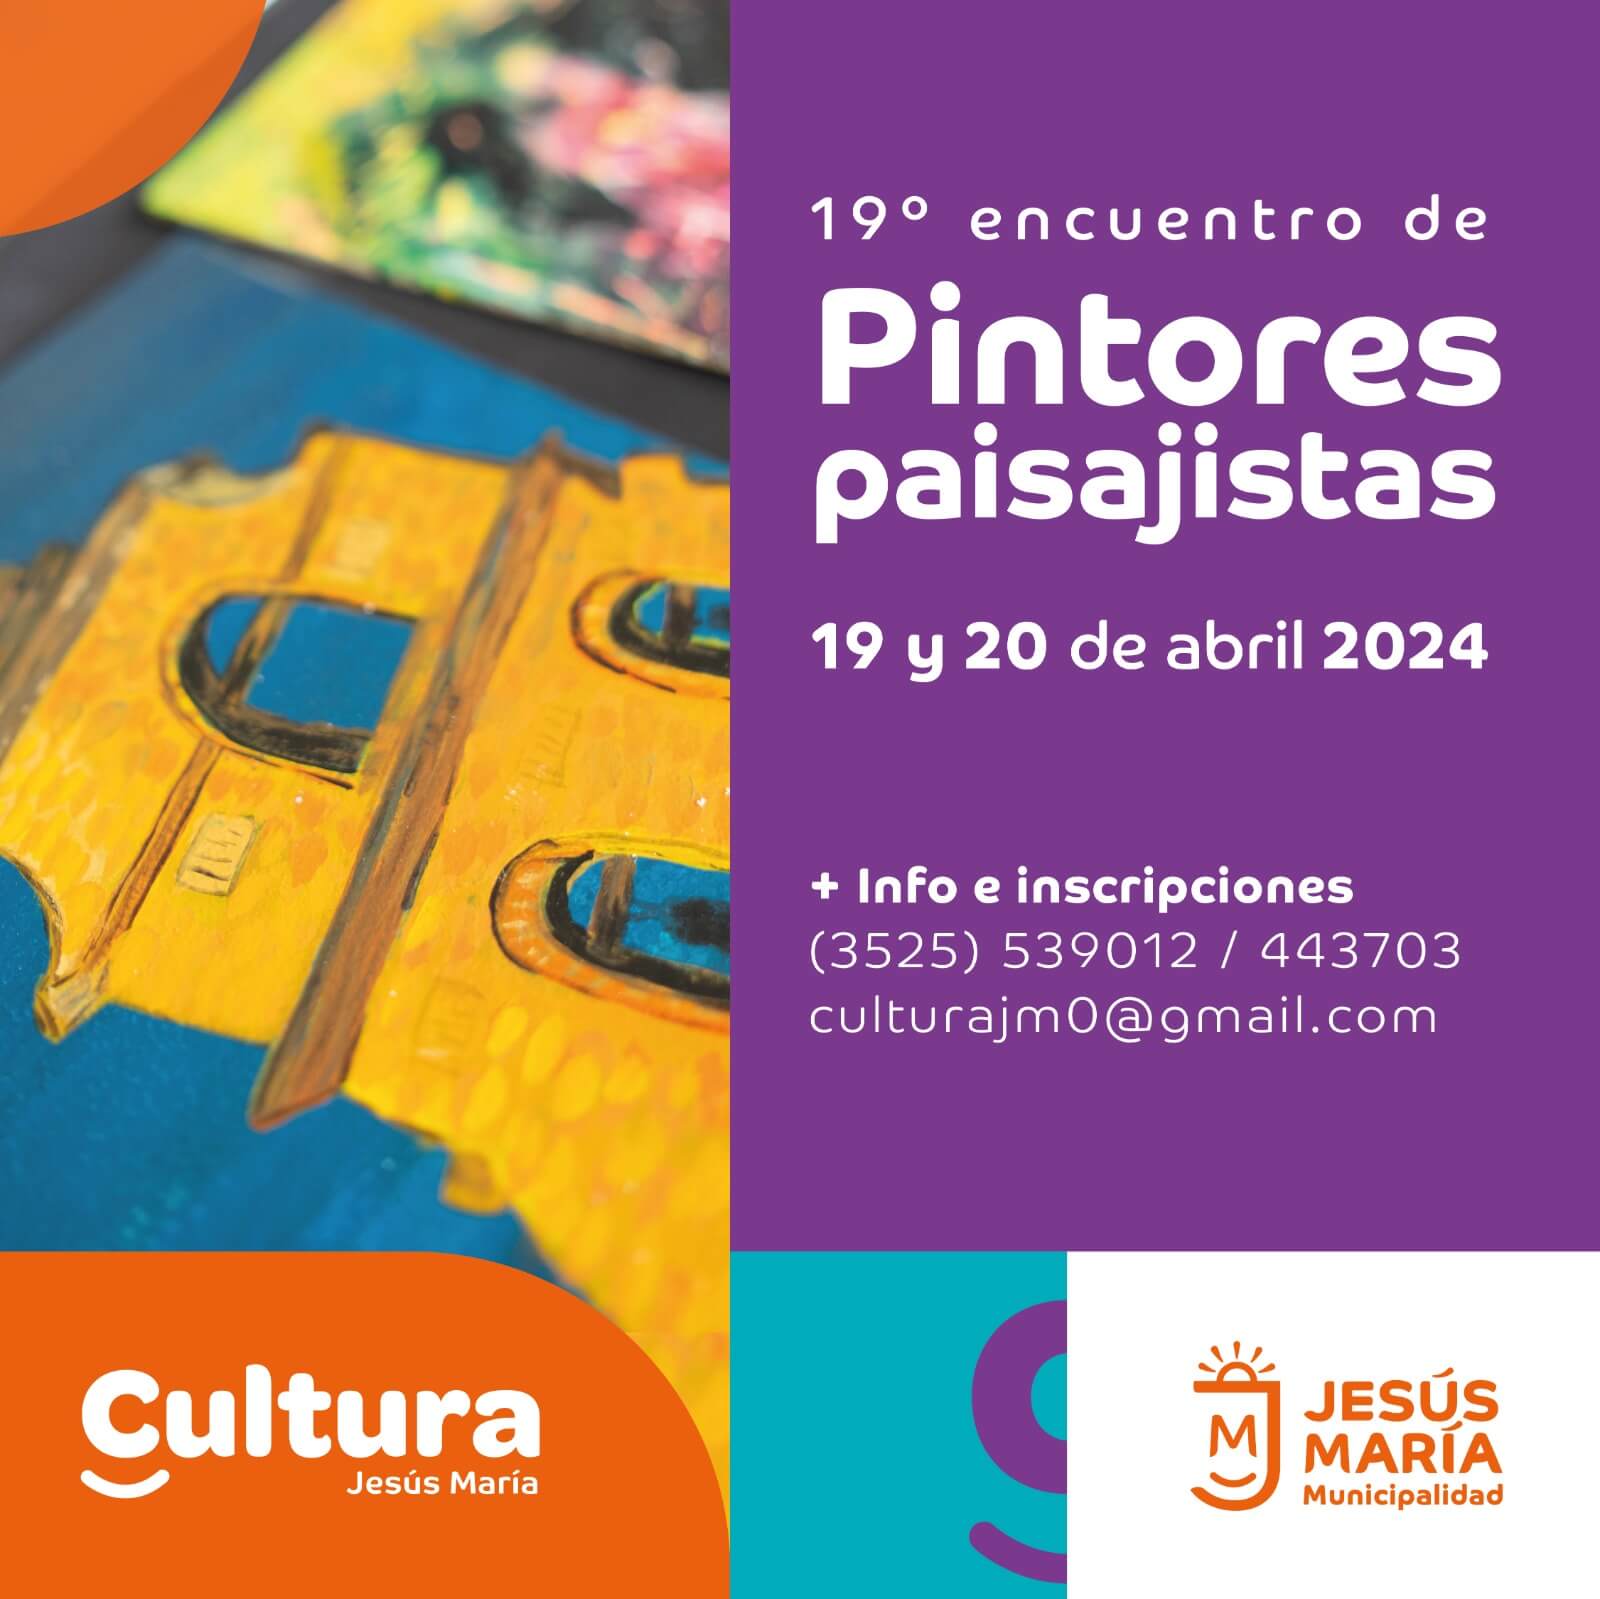 La Municipalidad de Jesús María, a través de la Dirección de Cultura, invita a artistas plásticos a sumarse al 19º Encuentro de Pintores Paisajistas que tendrá lugar el 19 y 20 de abril en la ciudad.